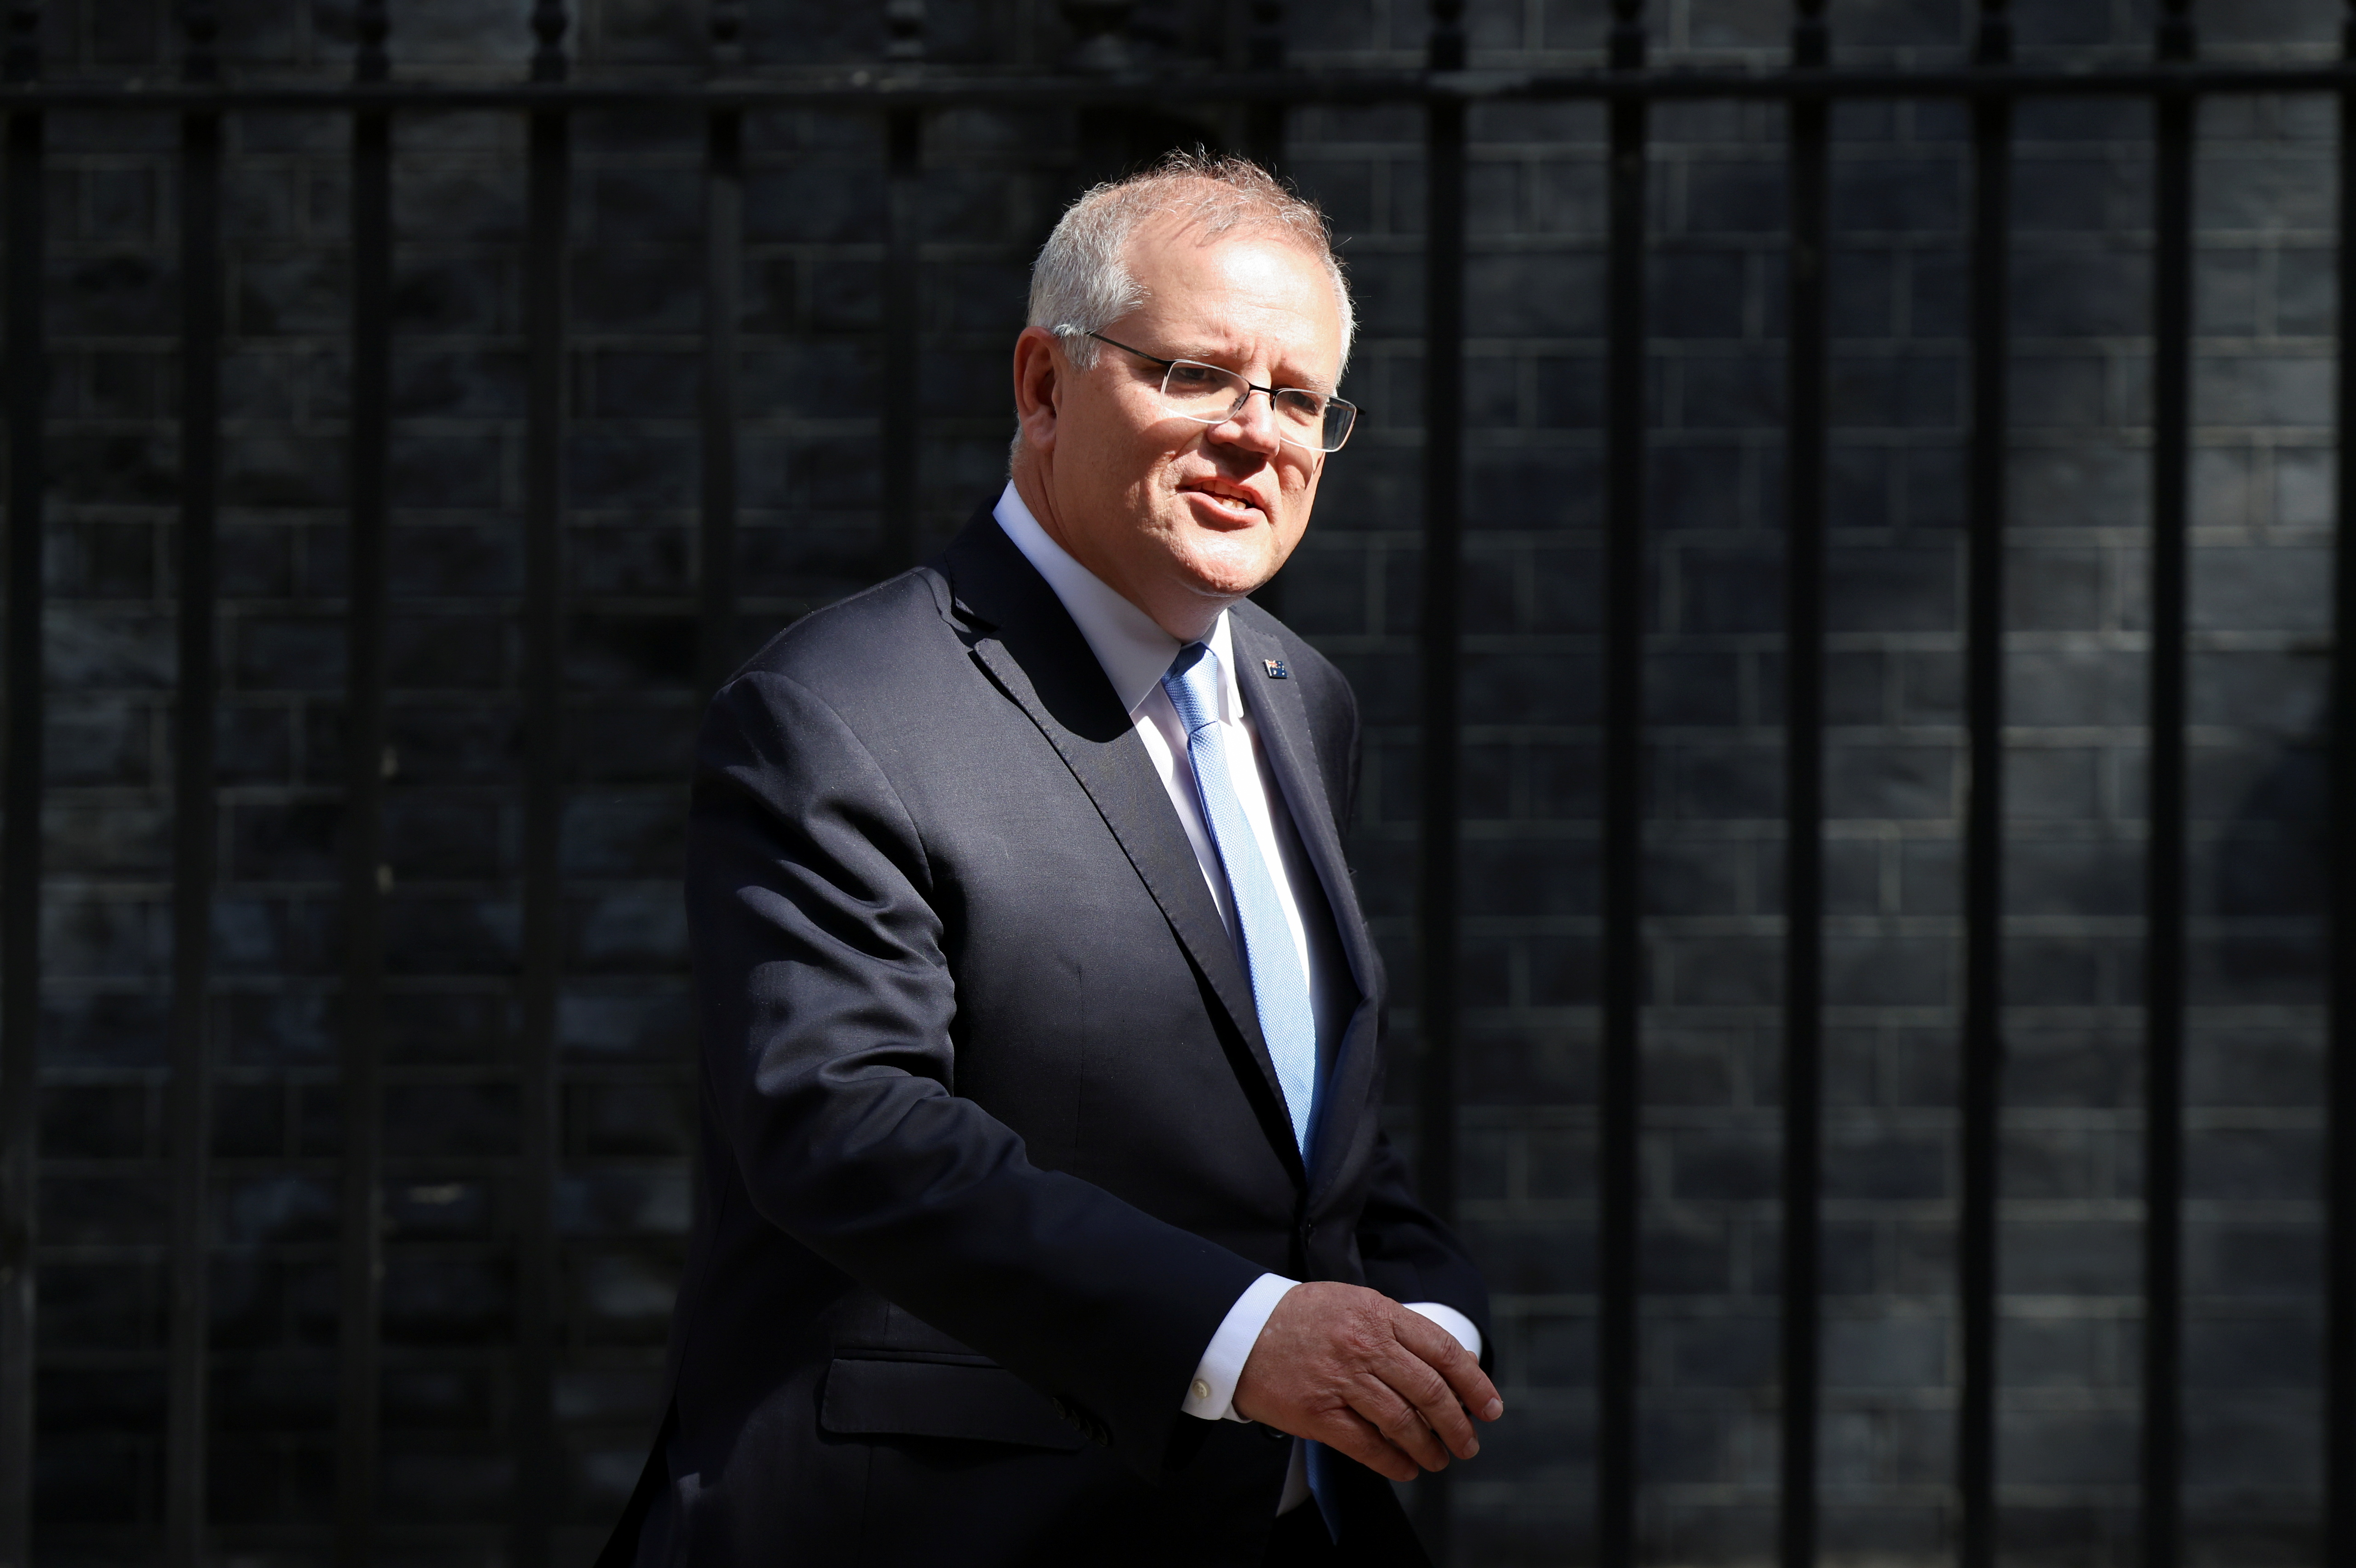 Australian Prime Minister Scott Morrison leaves Downing Street in London